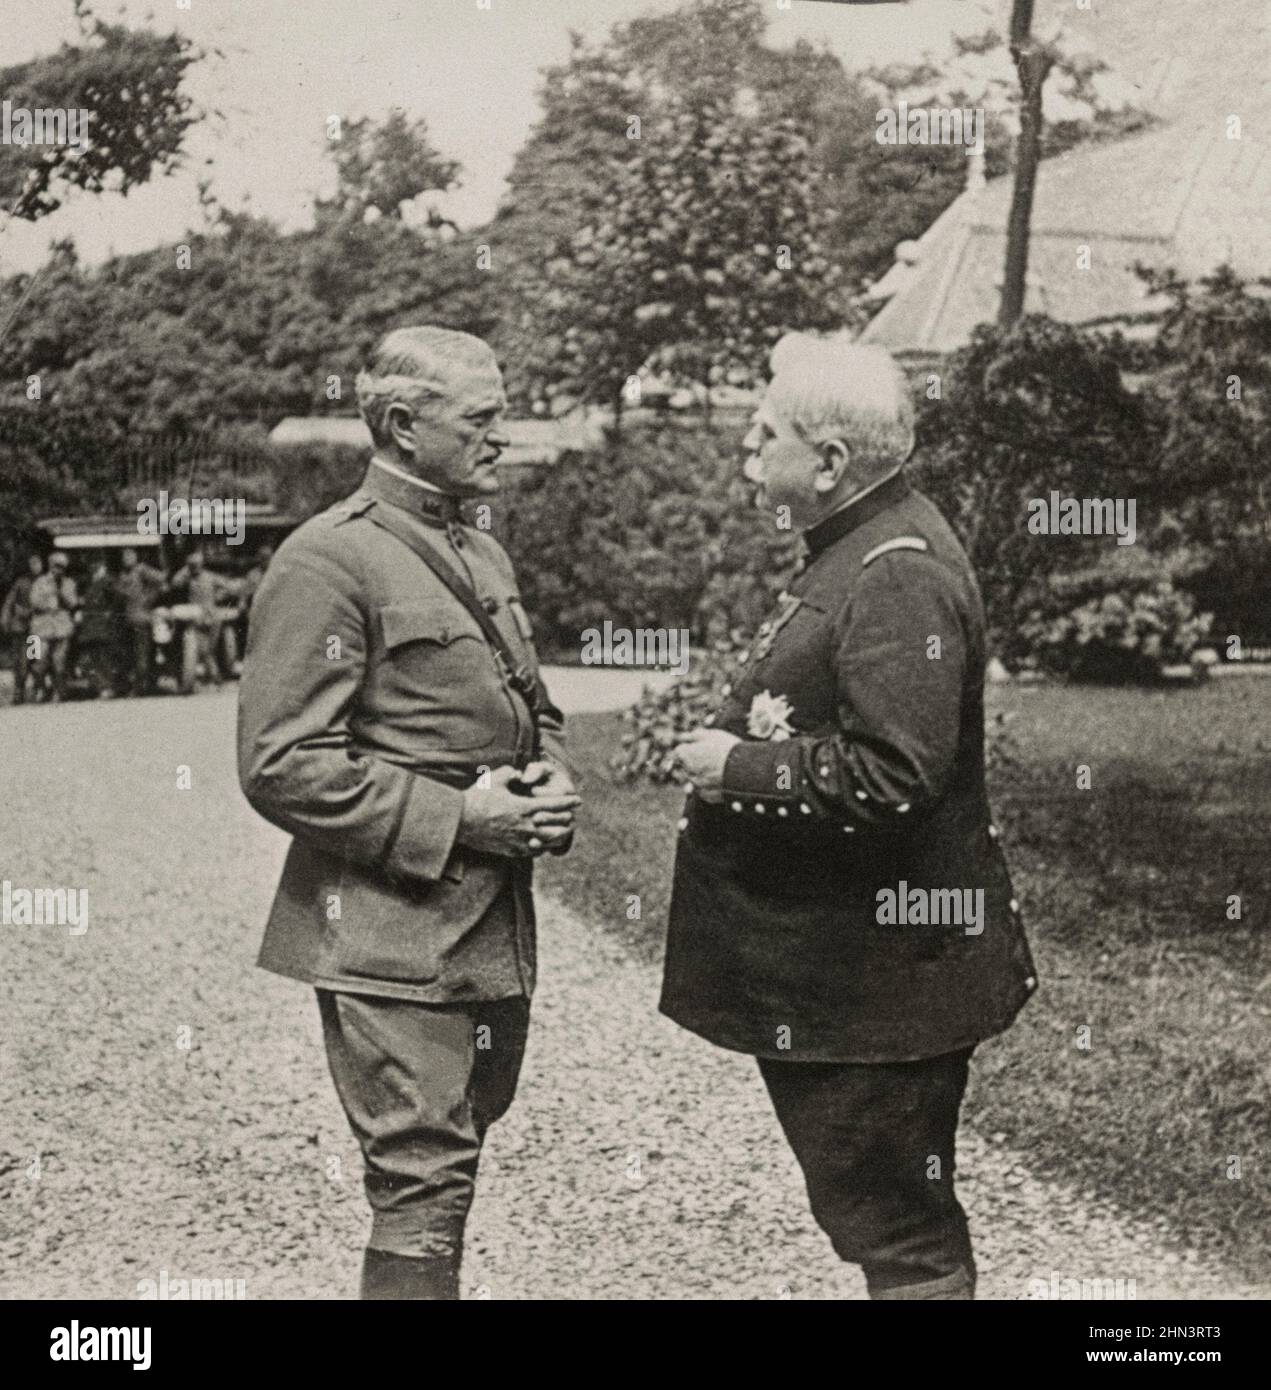 Foto d'epoca del maresciallo di Francia Joseph Joffre e del generale maggiore John J. Pershing nei Giardini del Governatore. Parigi, Francia. 1918 Foto Stock